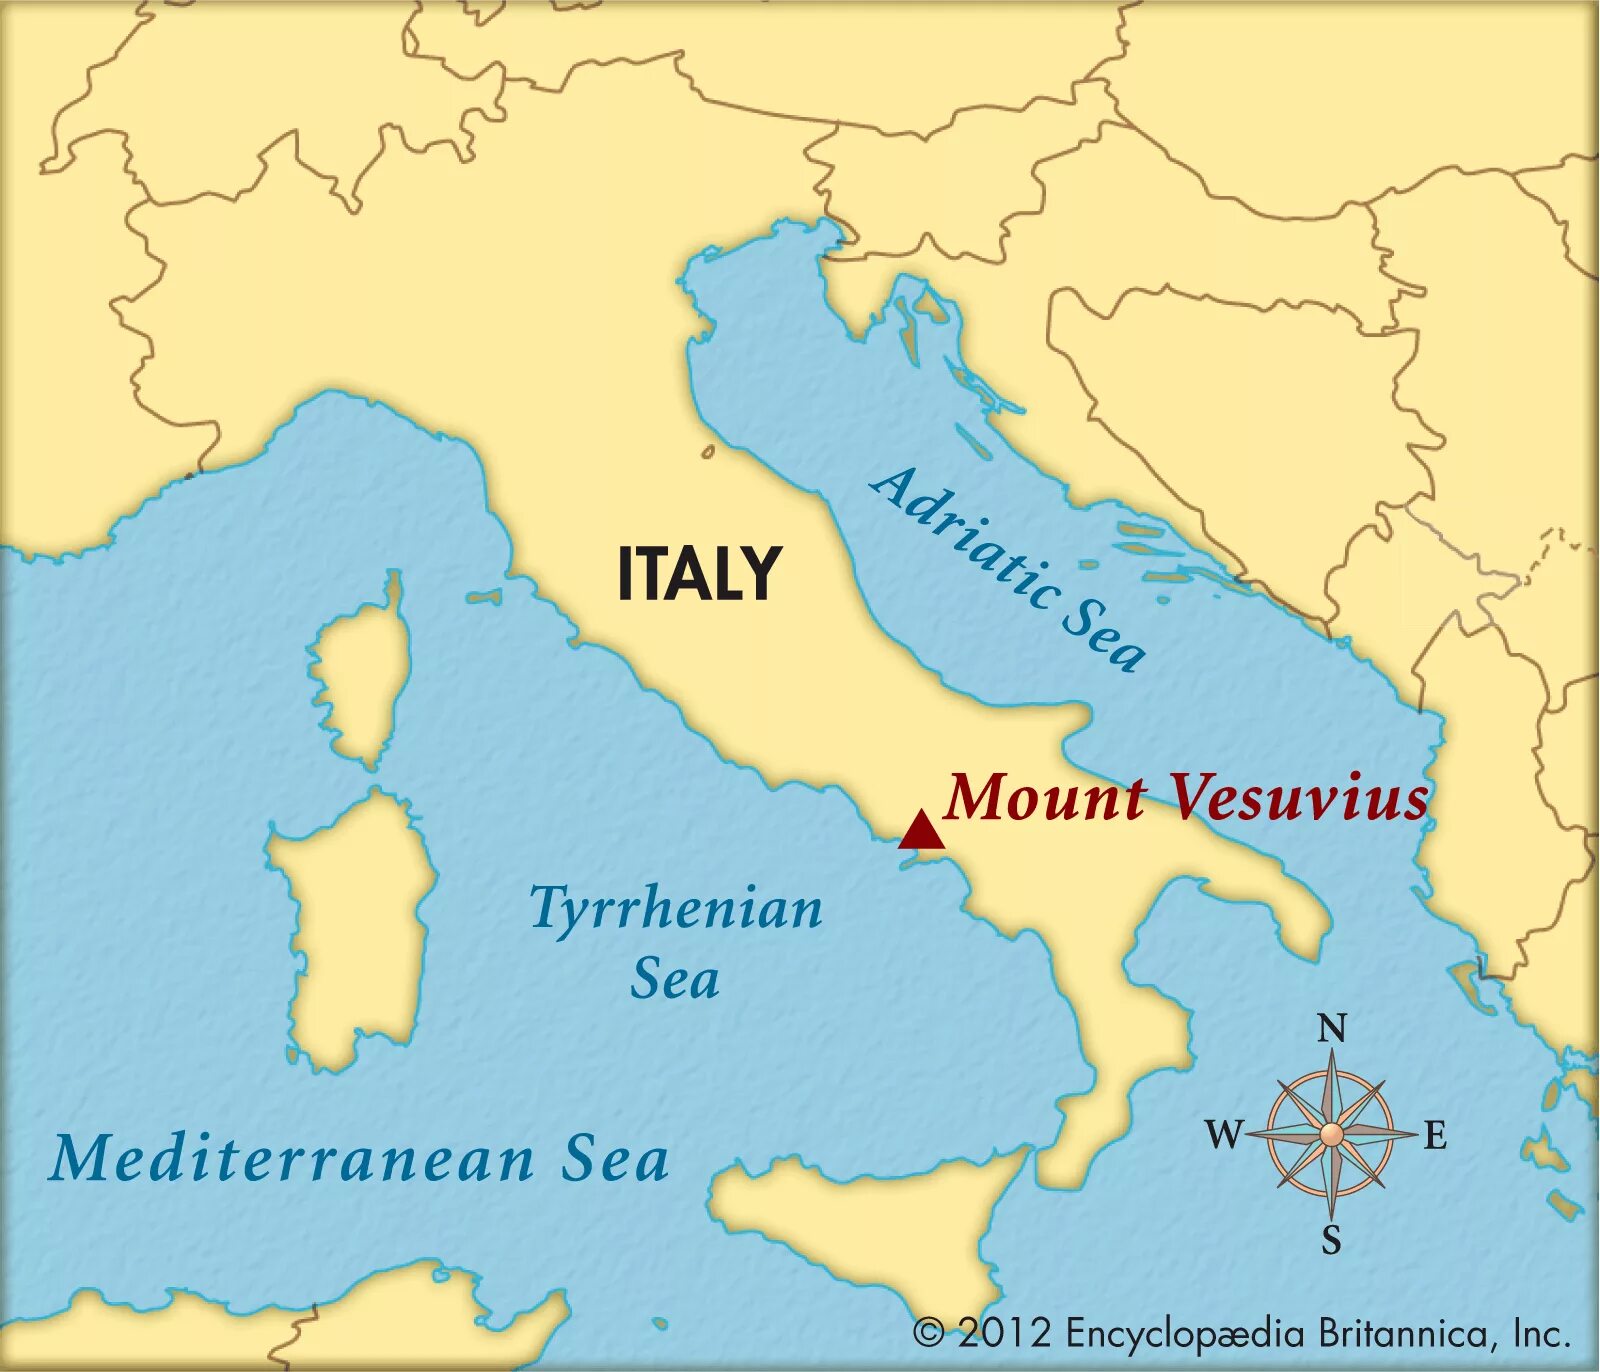 Где находится вулкан везувий координаты. Вулкан Везувий местоположение на карте. Вулкан Везувий расположение на карте. Местонахождение вулкана Везувий на карте. Везувий на карте Италии.